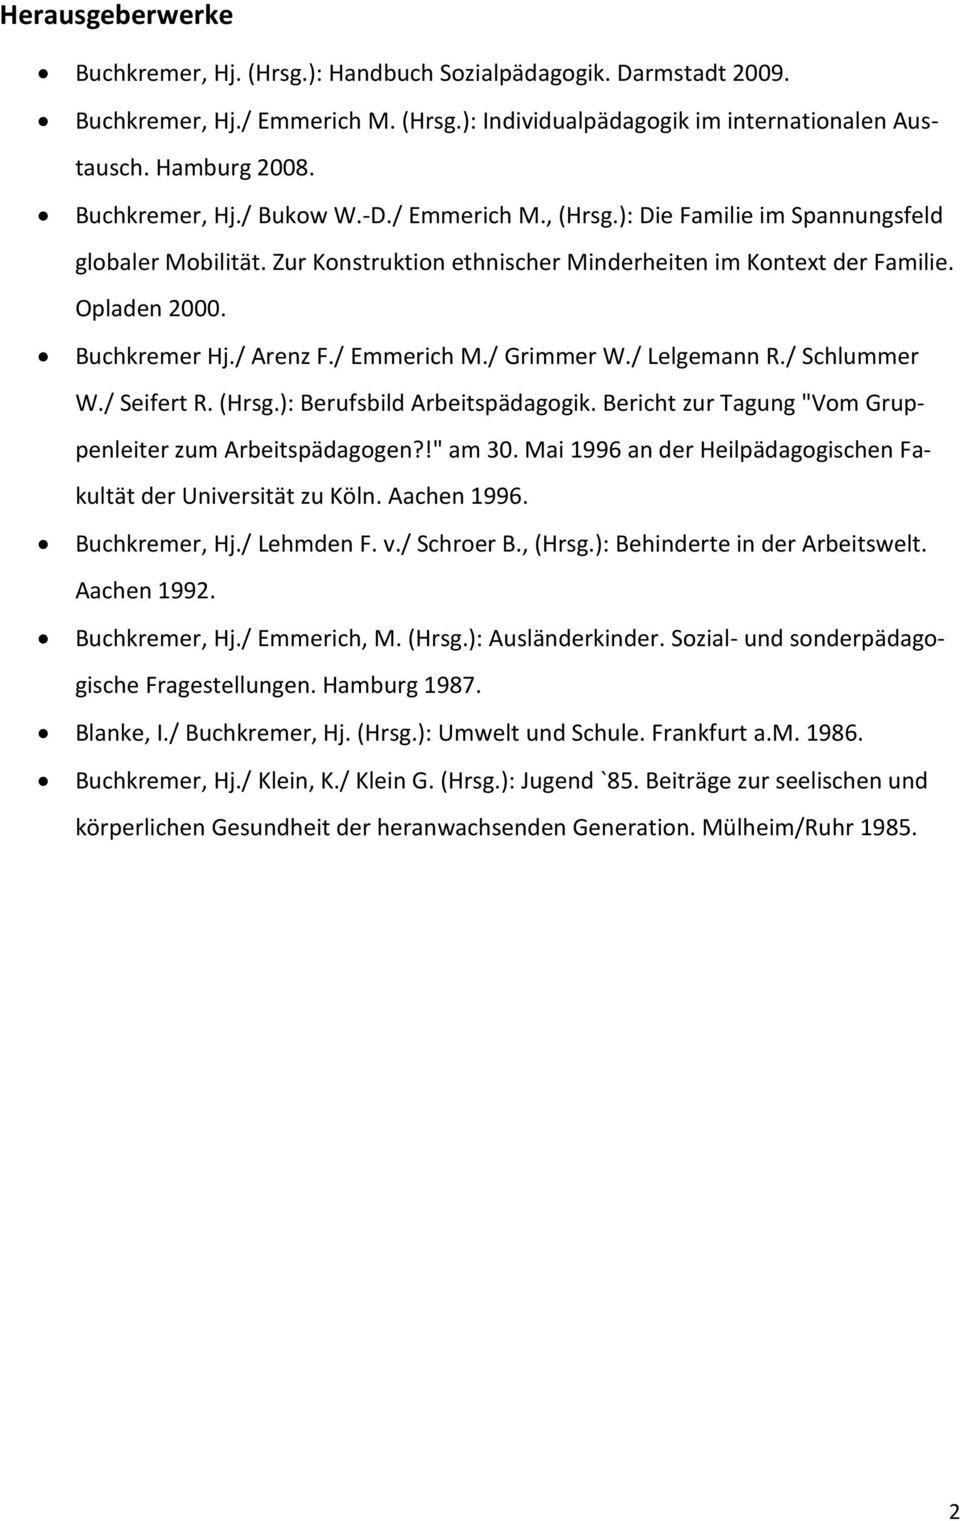 / Arenz F./ Emmerich M./ Grimmer W./ Lelgemann R./ Schlummer W./ Seifert R. (Hrsg.): Berufsbild Arbeitspädagogik. Bericht zur Tagung "Vom Gruppenleiter zum Arbeitspädagogen?!" am 30.